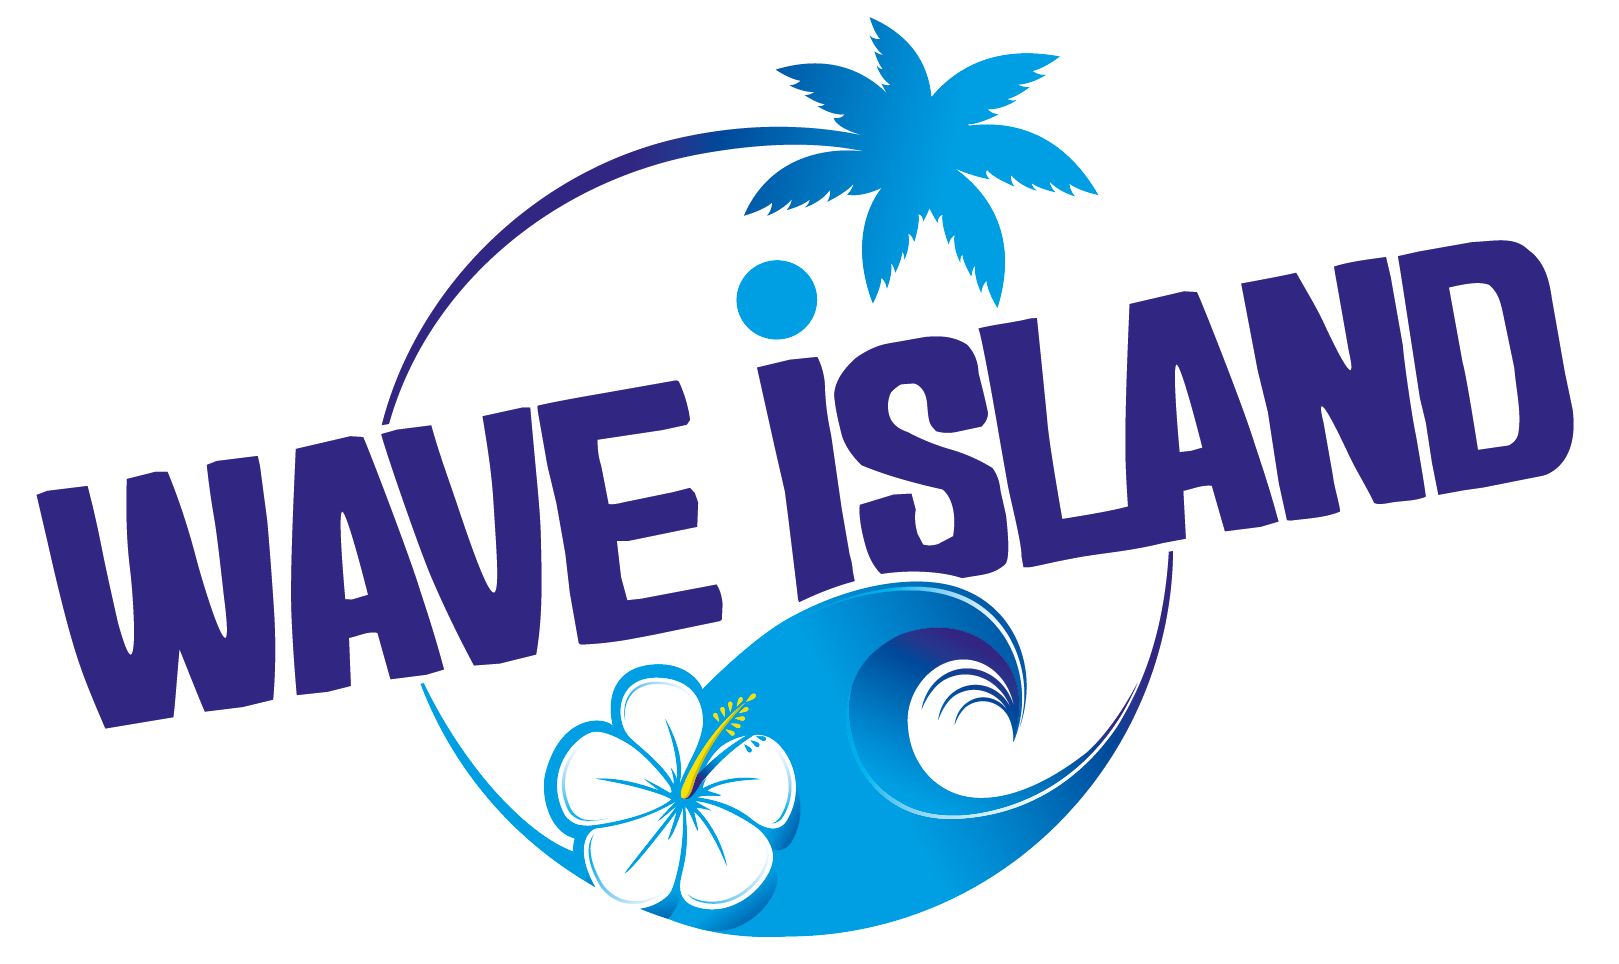 WAVE ISLAND, Parc d'attractions 100% glisse en Provence (84) !